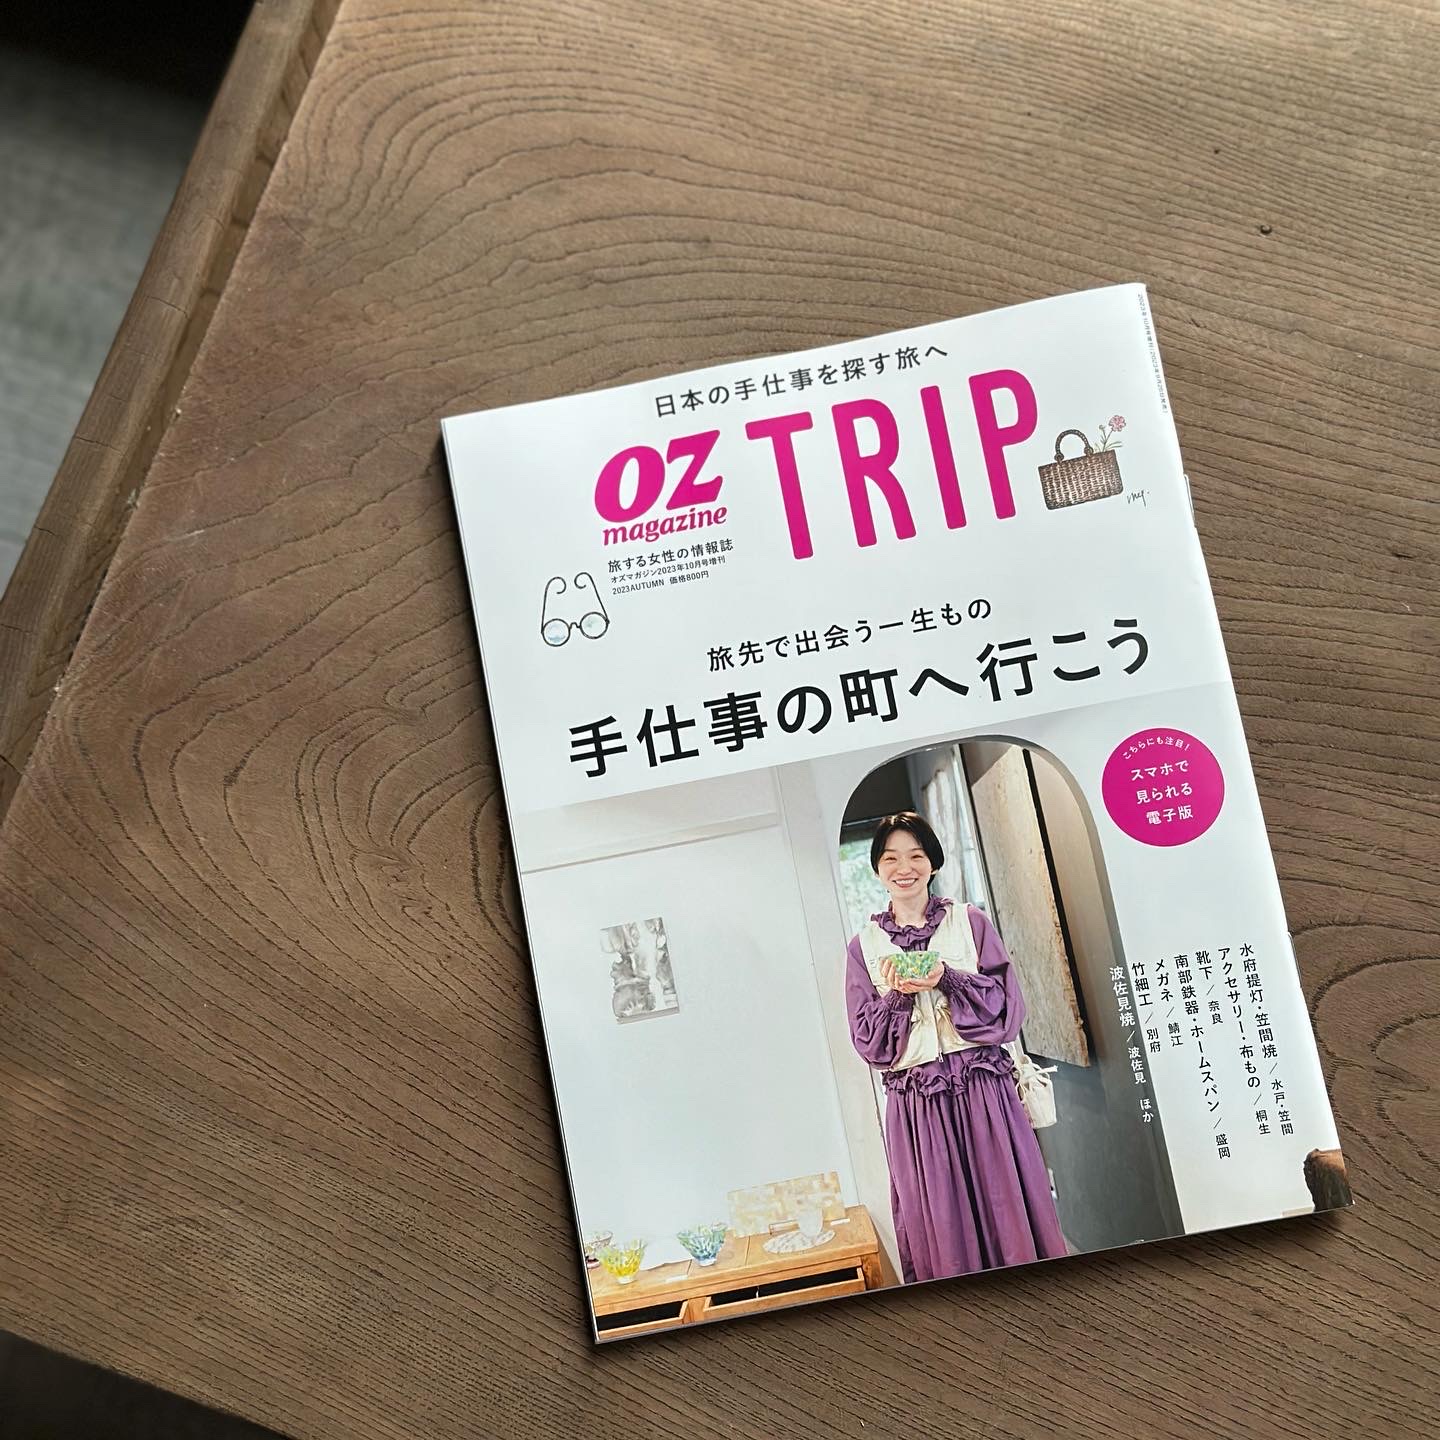 OZmagazine TRIP 掲載のお知らせ